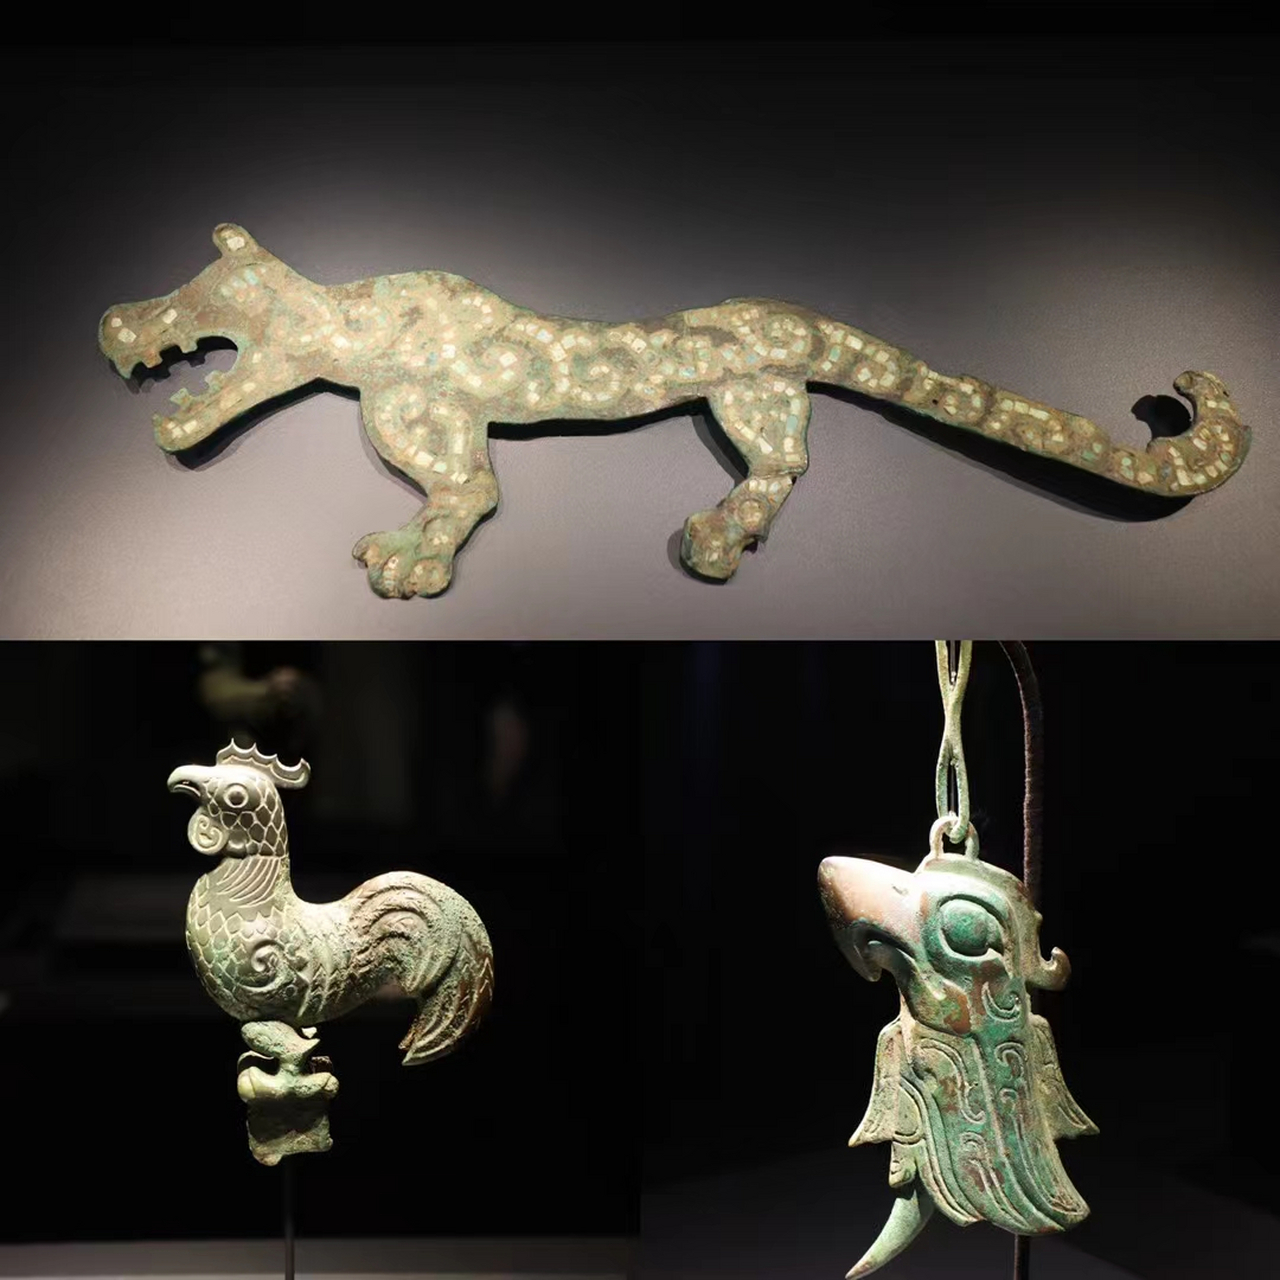 古蜀国,3000多年前的文物,太神奇了,德阳市,三星堆博物馆